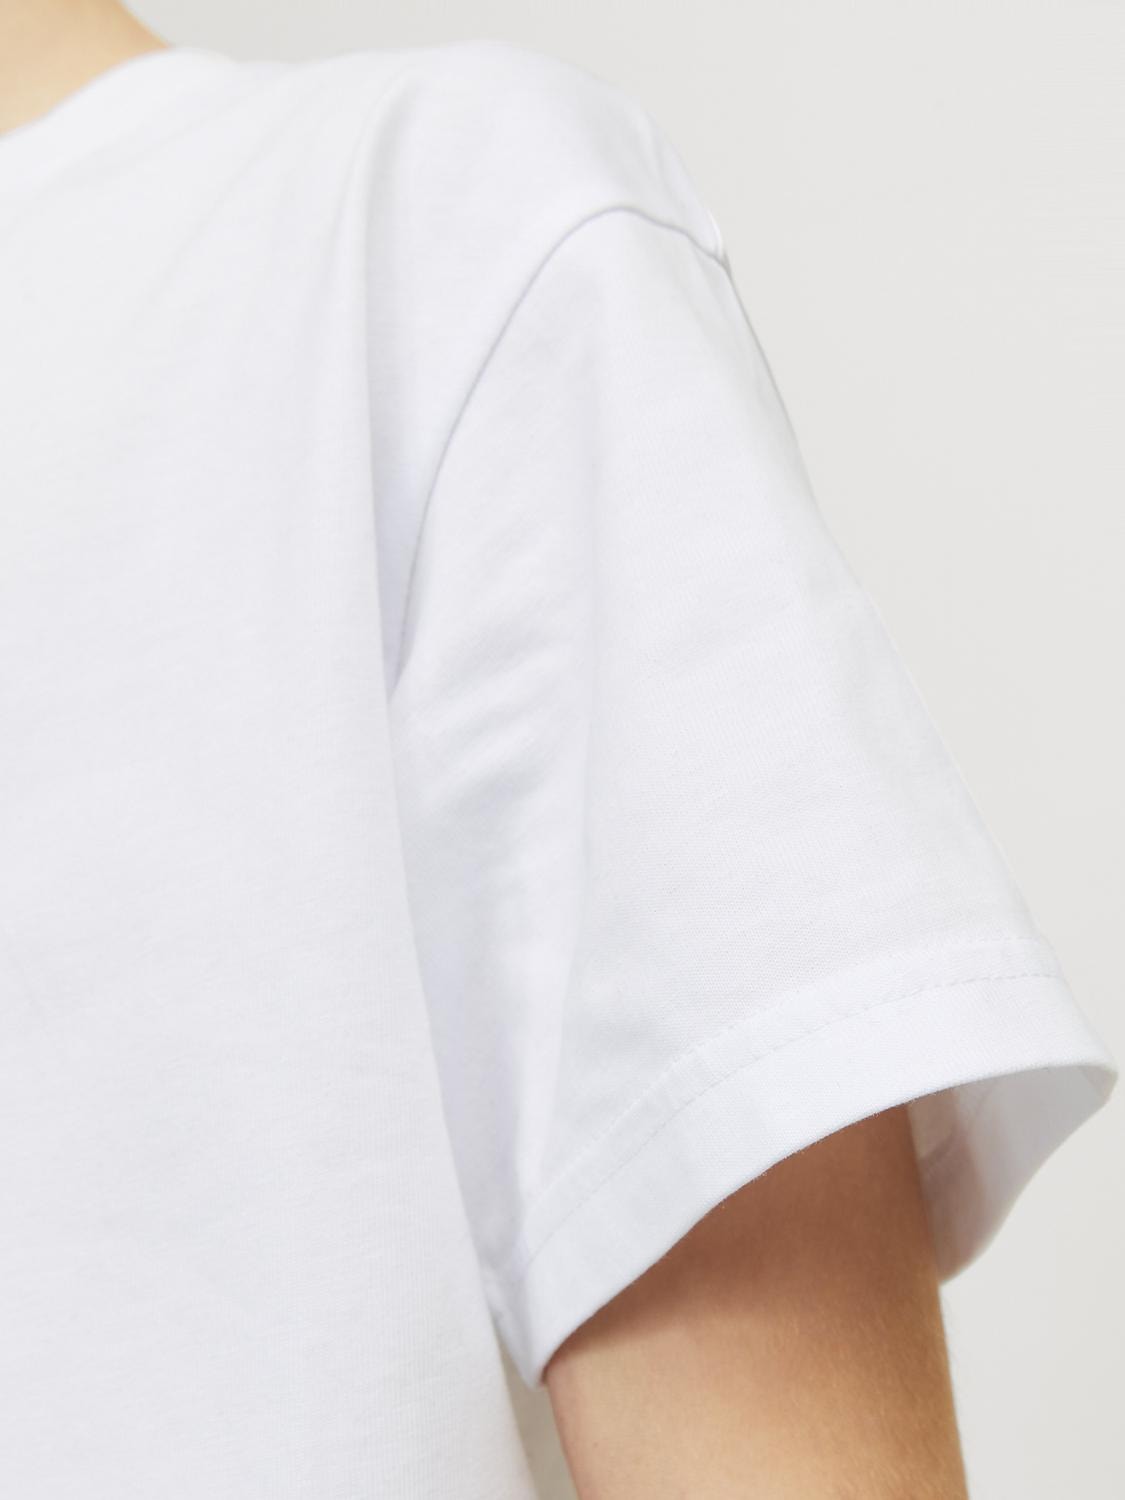 Jack & Jones Gładki T-shirt Dla chłopców -White - 12254288